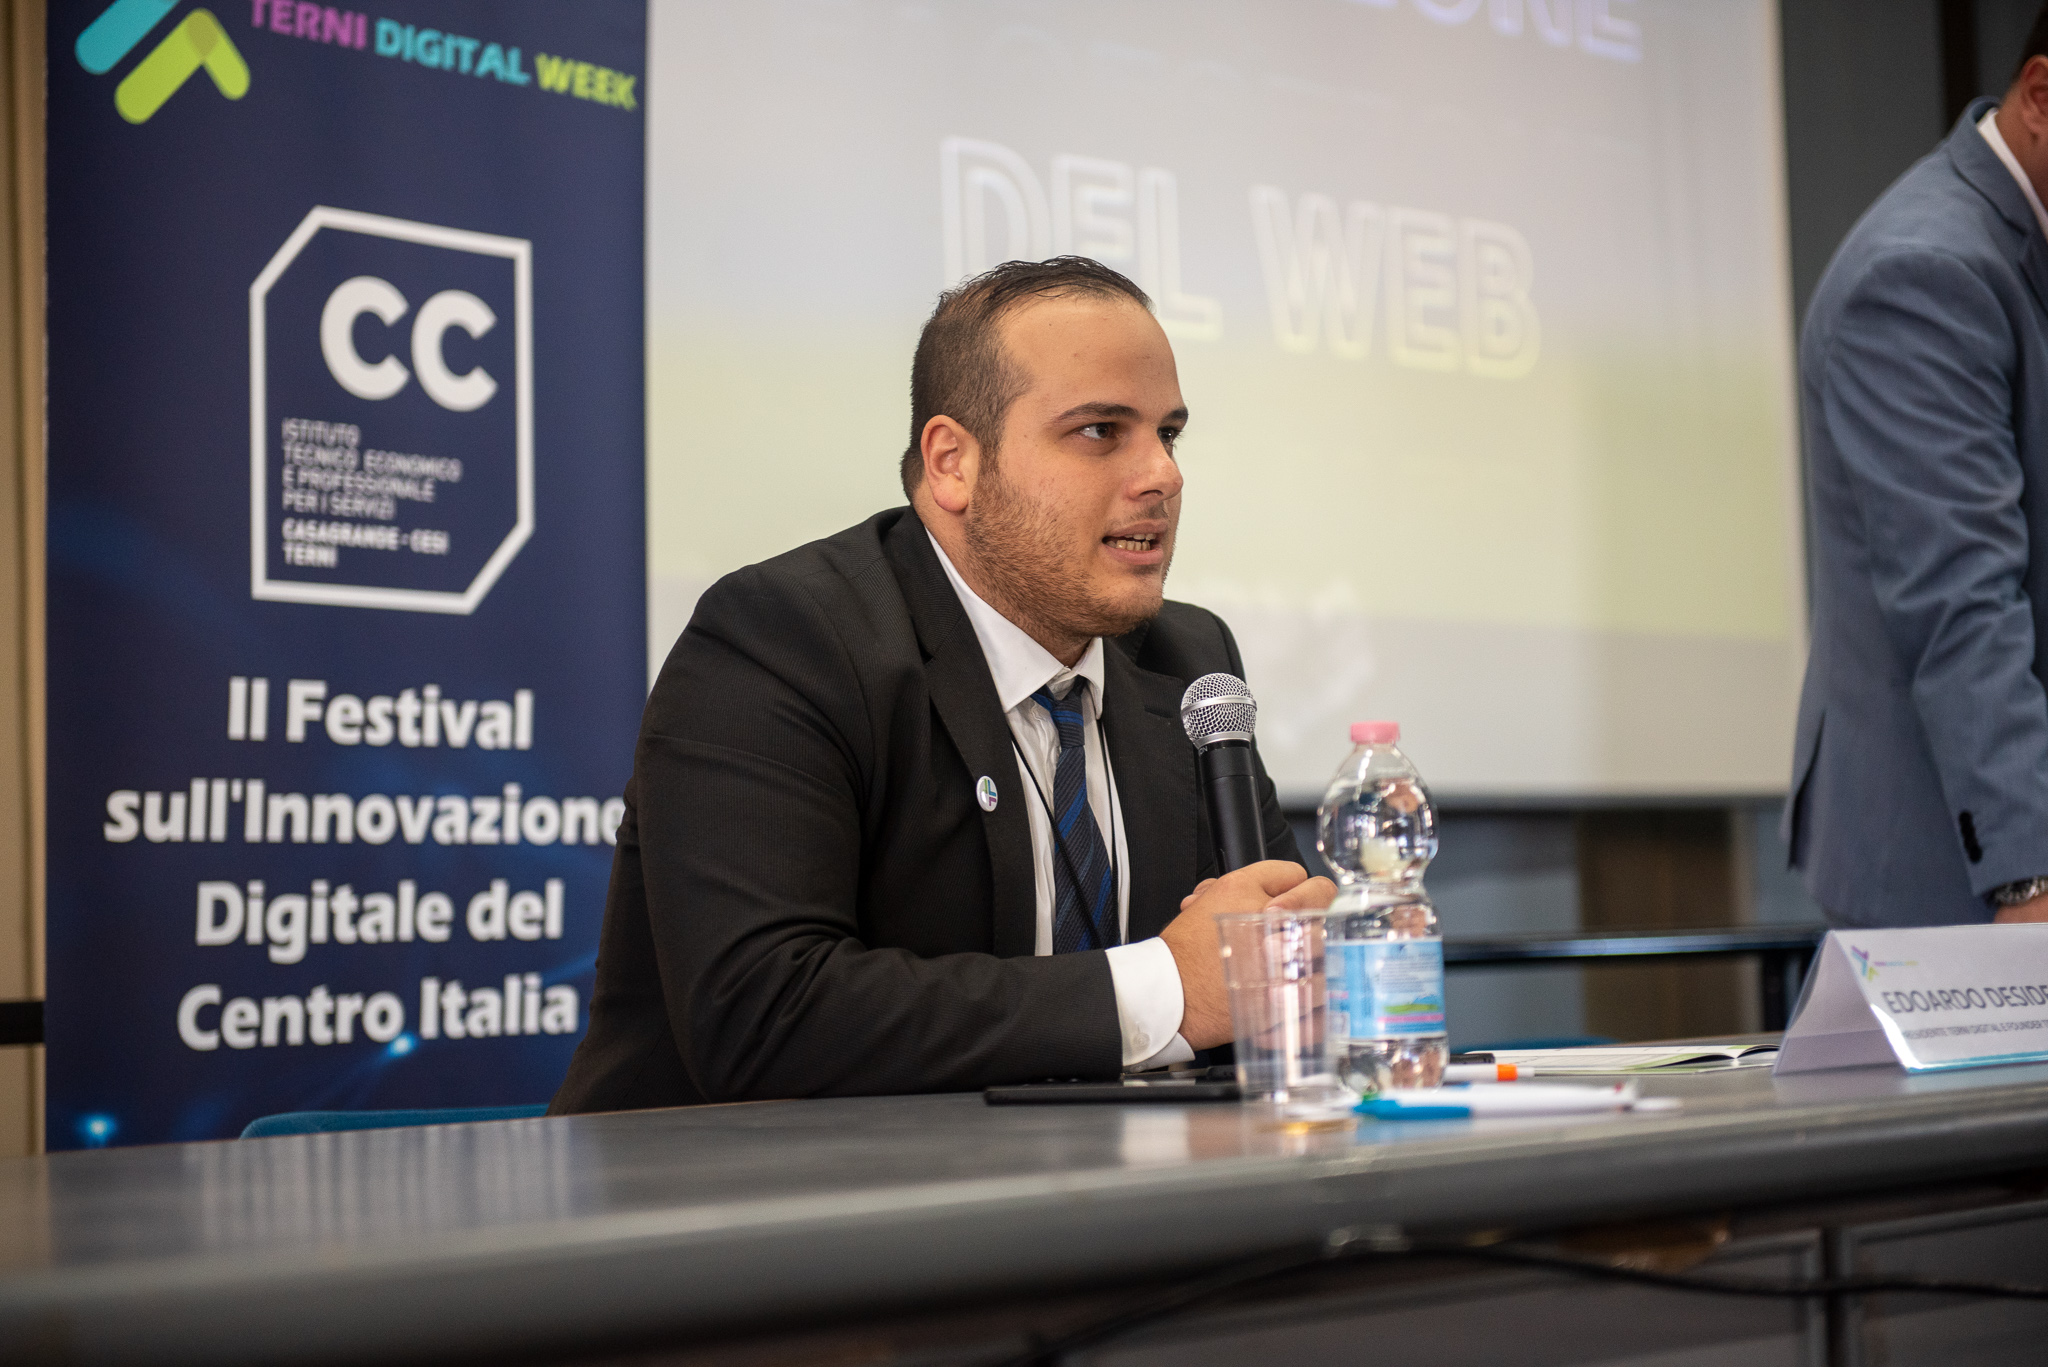 Grande successo per la quarta edizione di Terni Digital Week, che guarda al futuro con un Festival sull’Innovazione Digitale per il Centro Italia